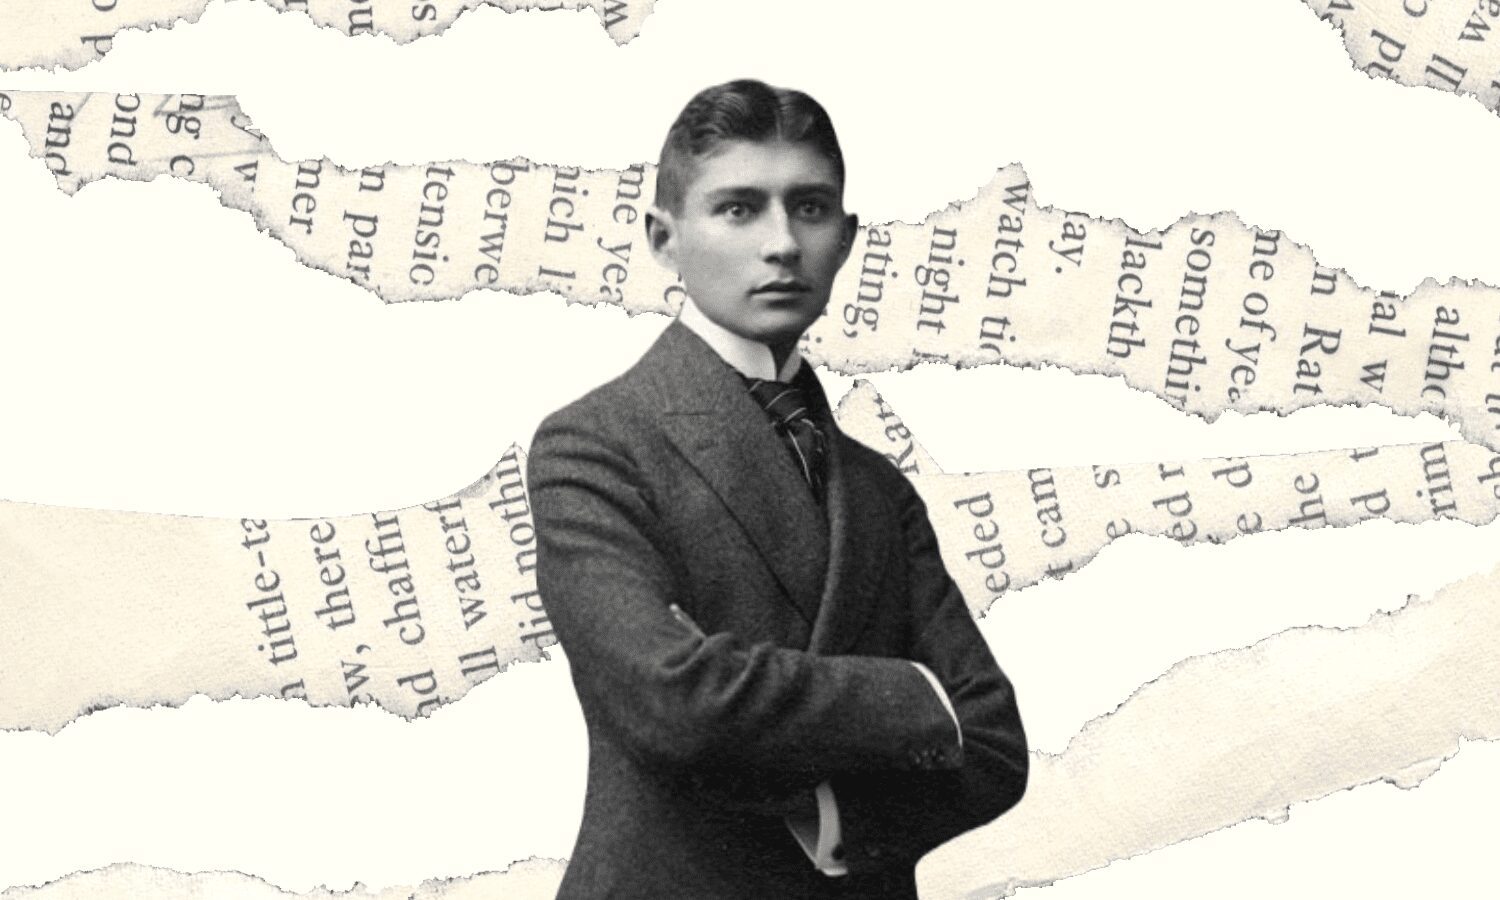 Conferència: L’univers simbòlic de Frank Kafka, en motiu del centenari de la seva mort